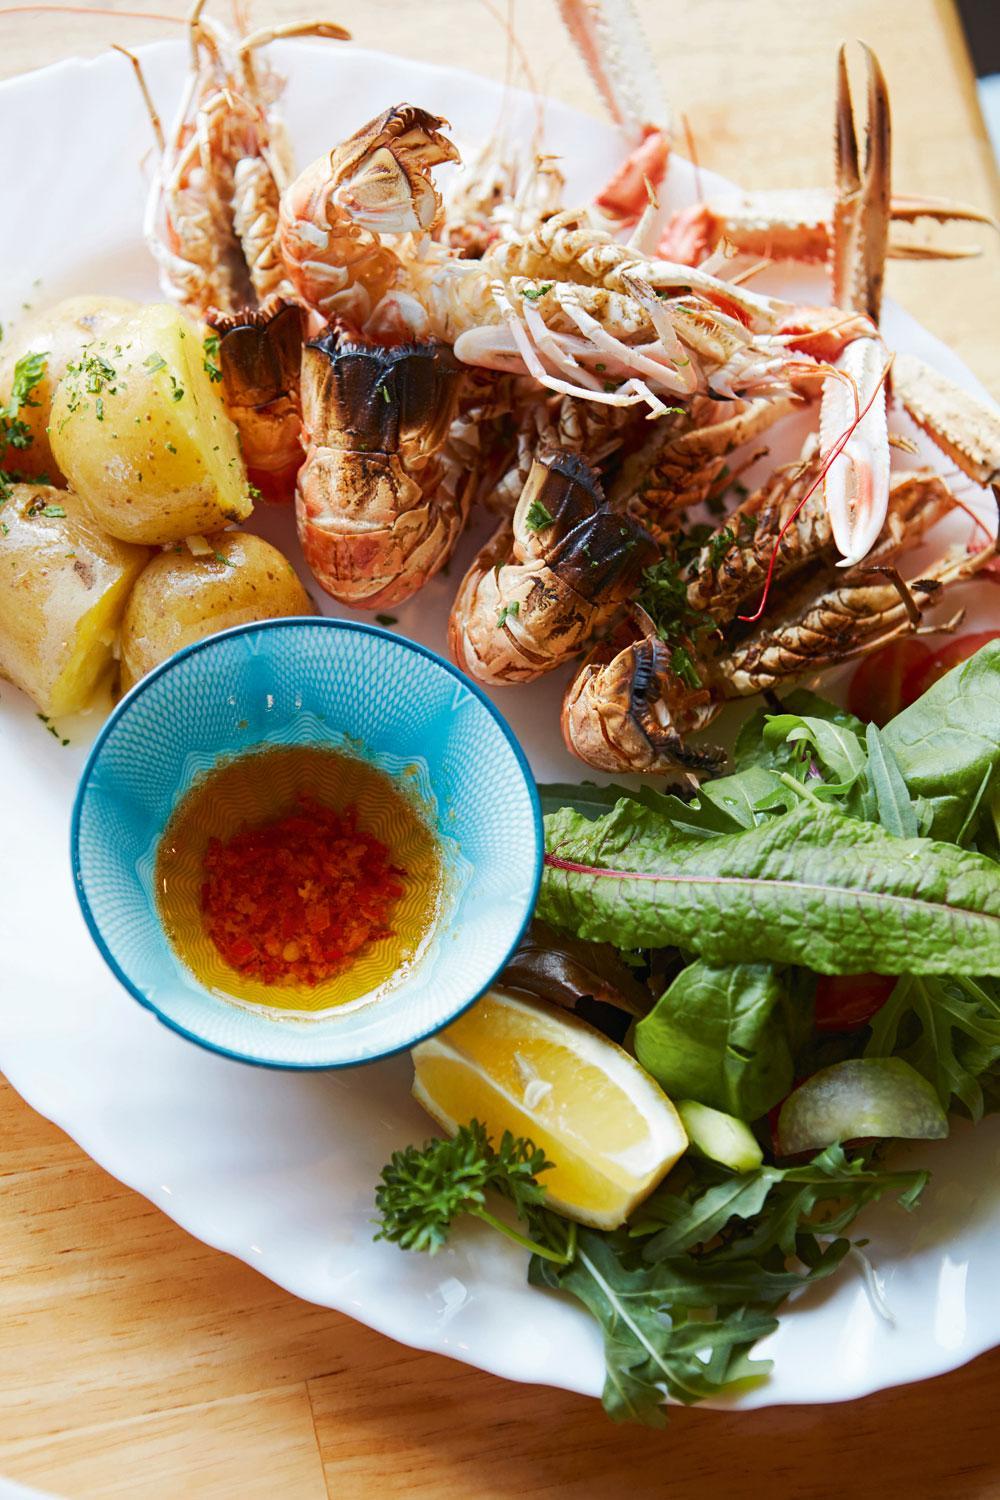 In de Kishorn Seafood Bar krijg je kreeft, oesters, mosselen en krab geserveerd.